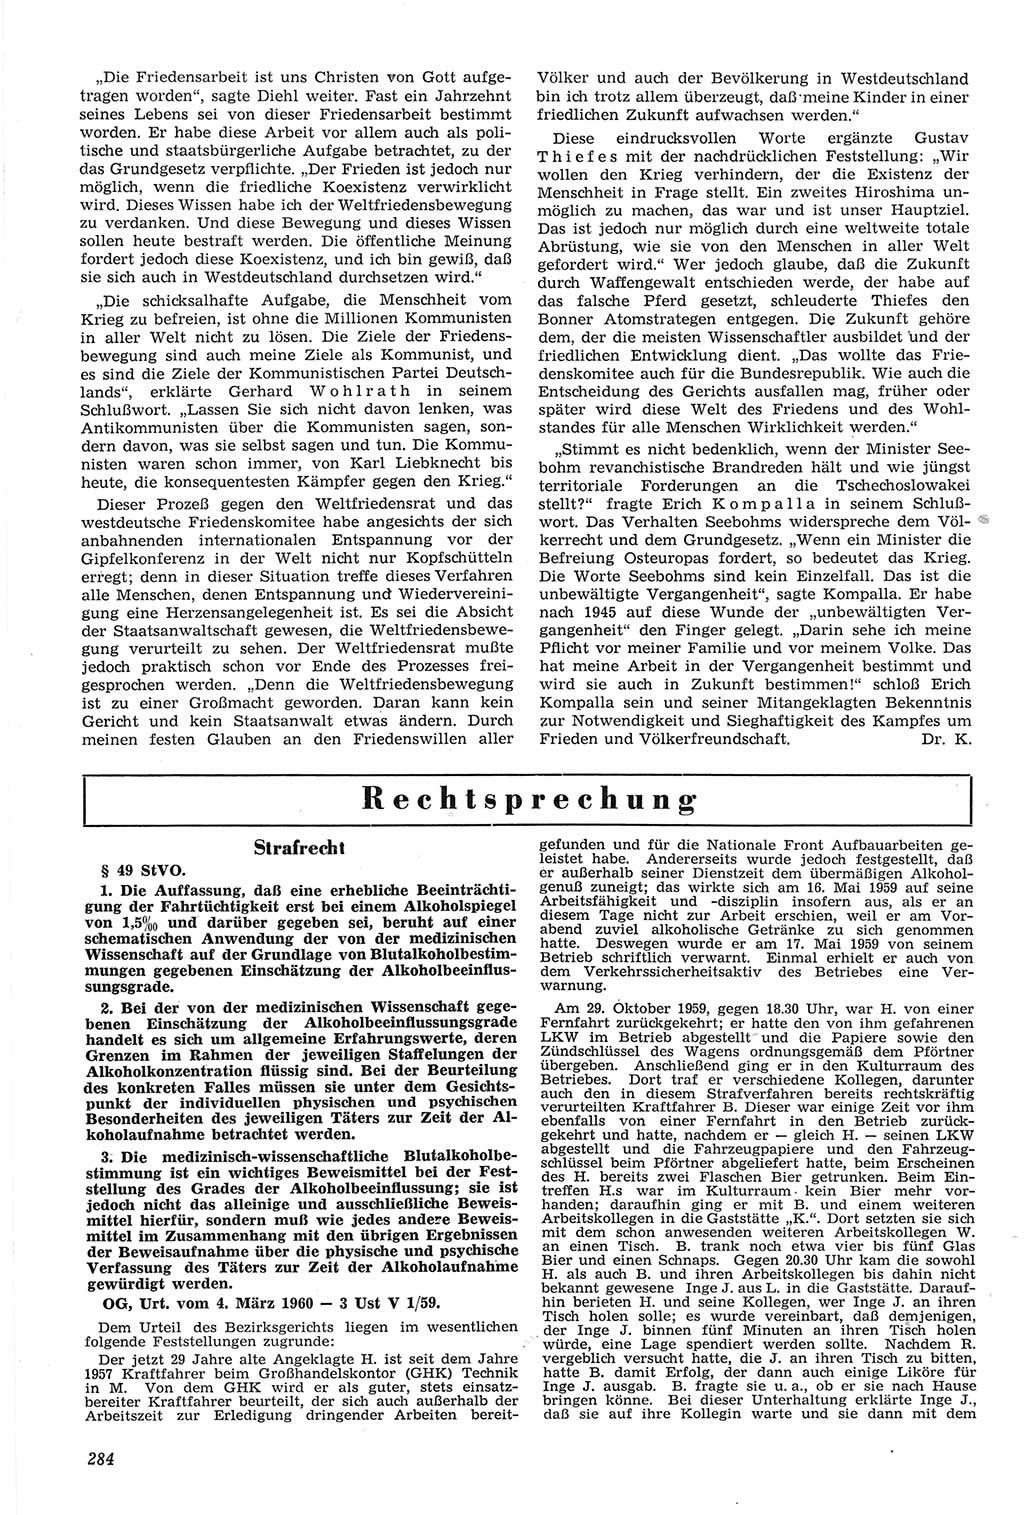 Neue Justiz (NJ), Zeitschrift für Recht und Rechtswissenschaft [Deutsche Demokratische Republik (DDR)], 14. Jahrgang 1960, Seite 284 (NJ DDR 1960, S. 284)